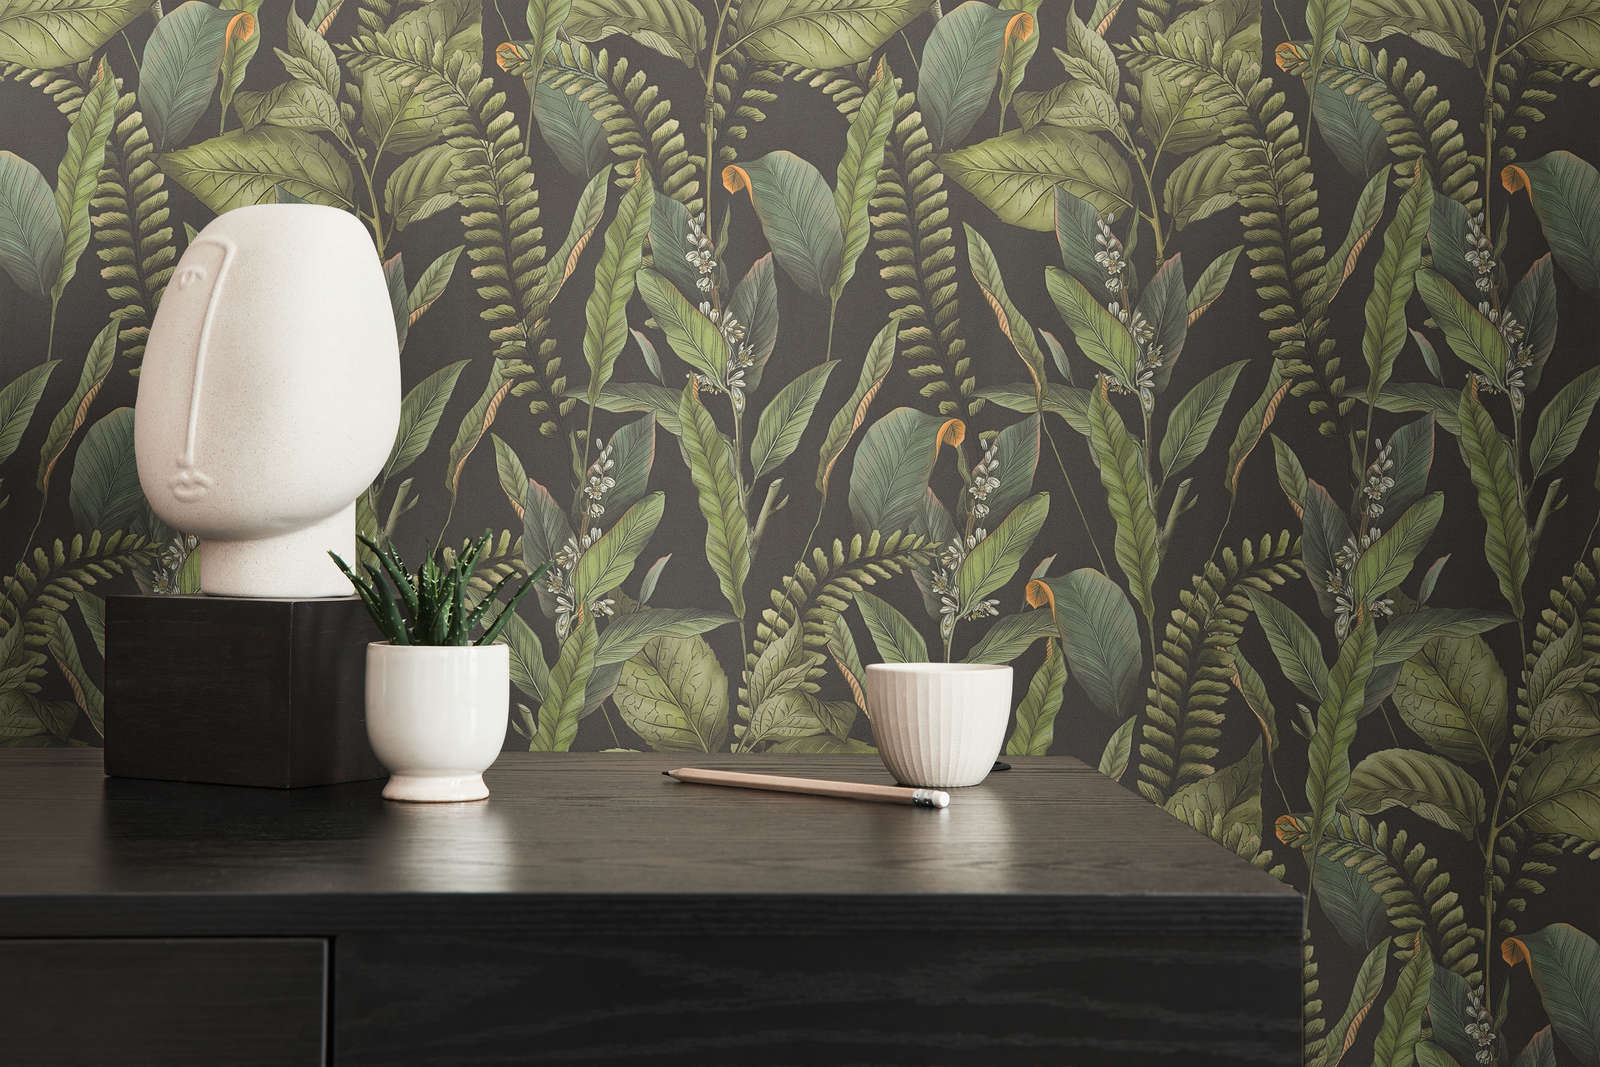             papier peint en papier jungle style floral avec feuilles & fleurs structuré mat - noir, vert, orange
        